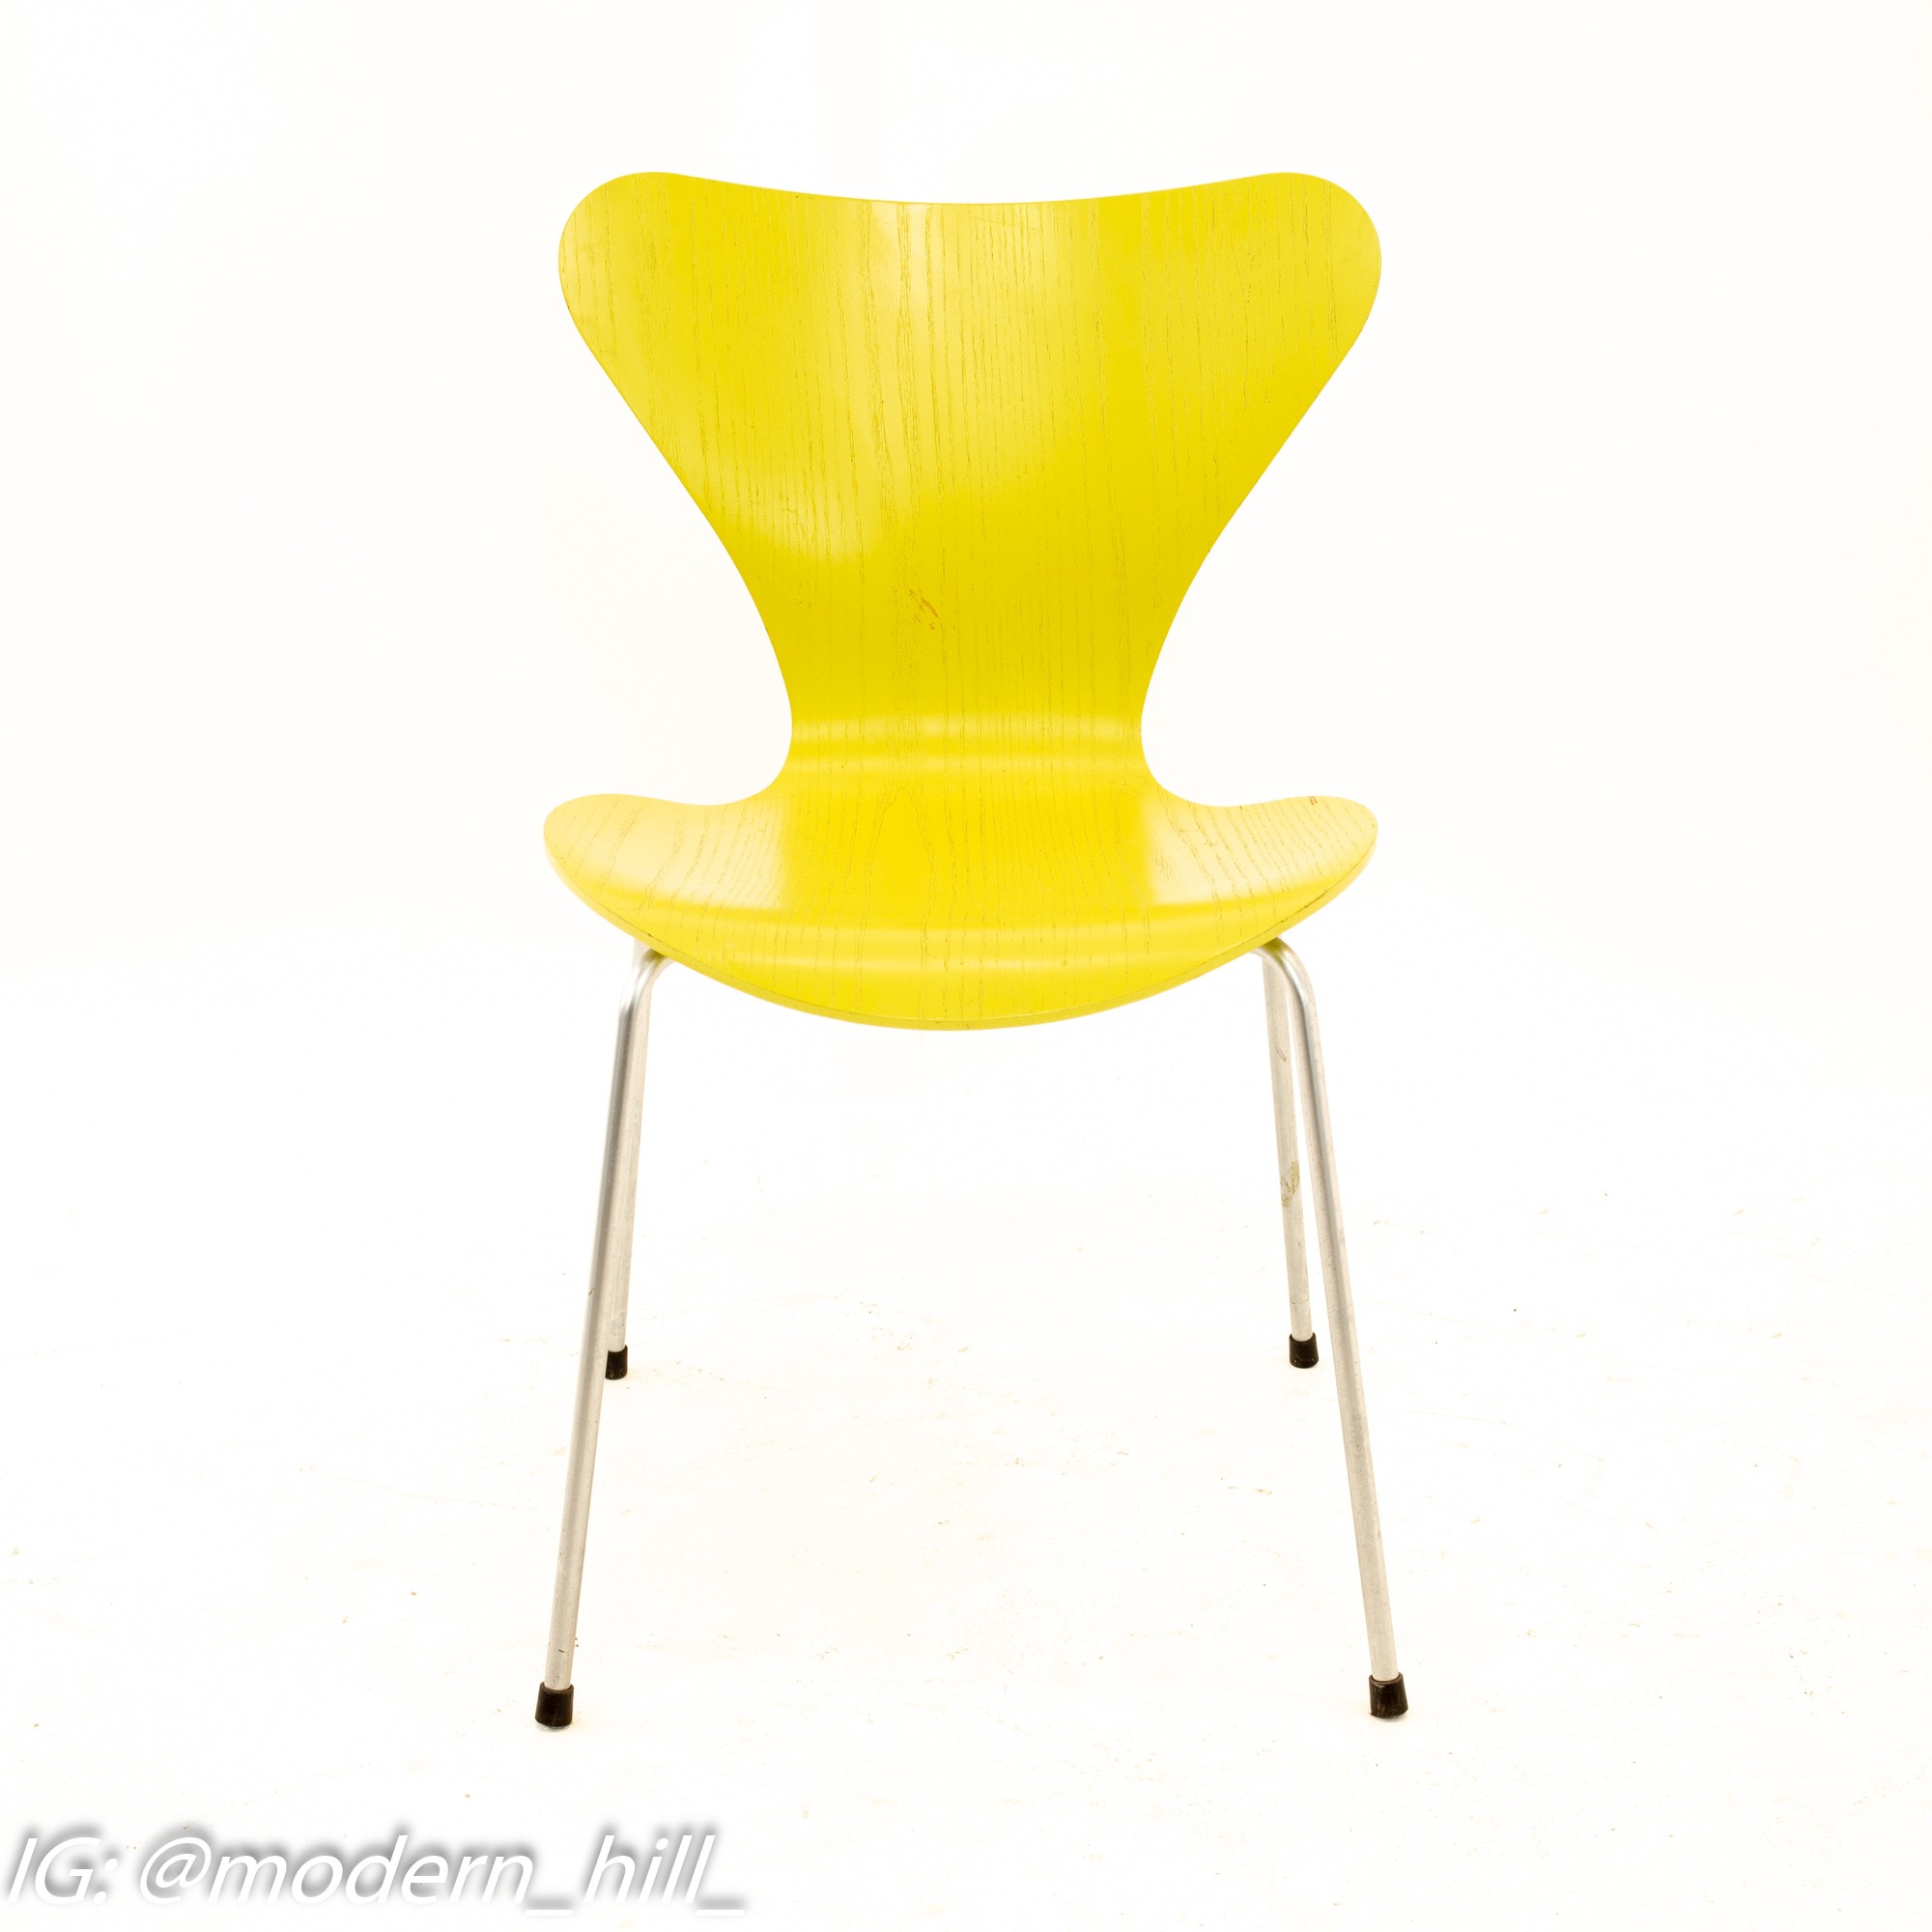 Arne Jacobsen for Fritz Hansen Mid Century Modern Series 7 Chairs - Lime - Set of 4